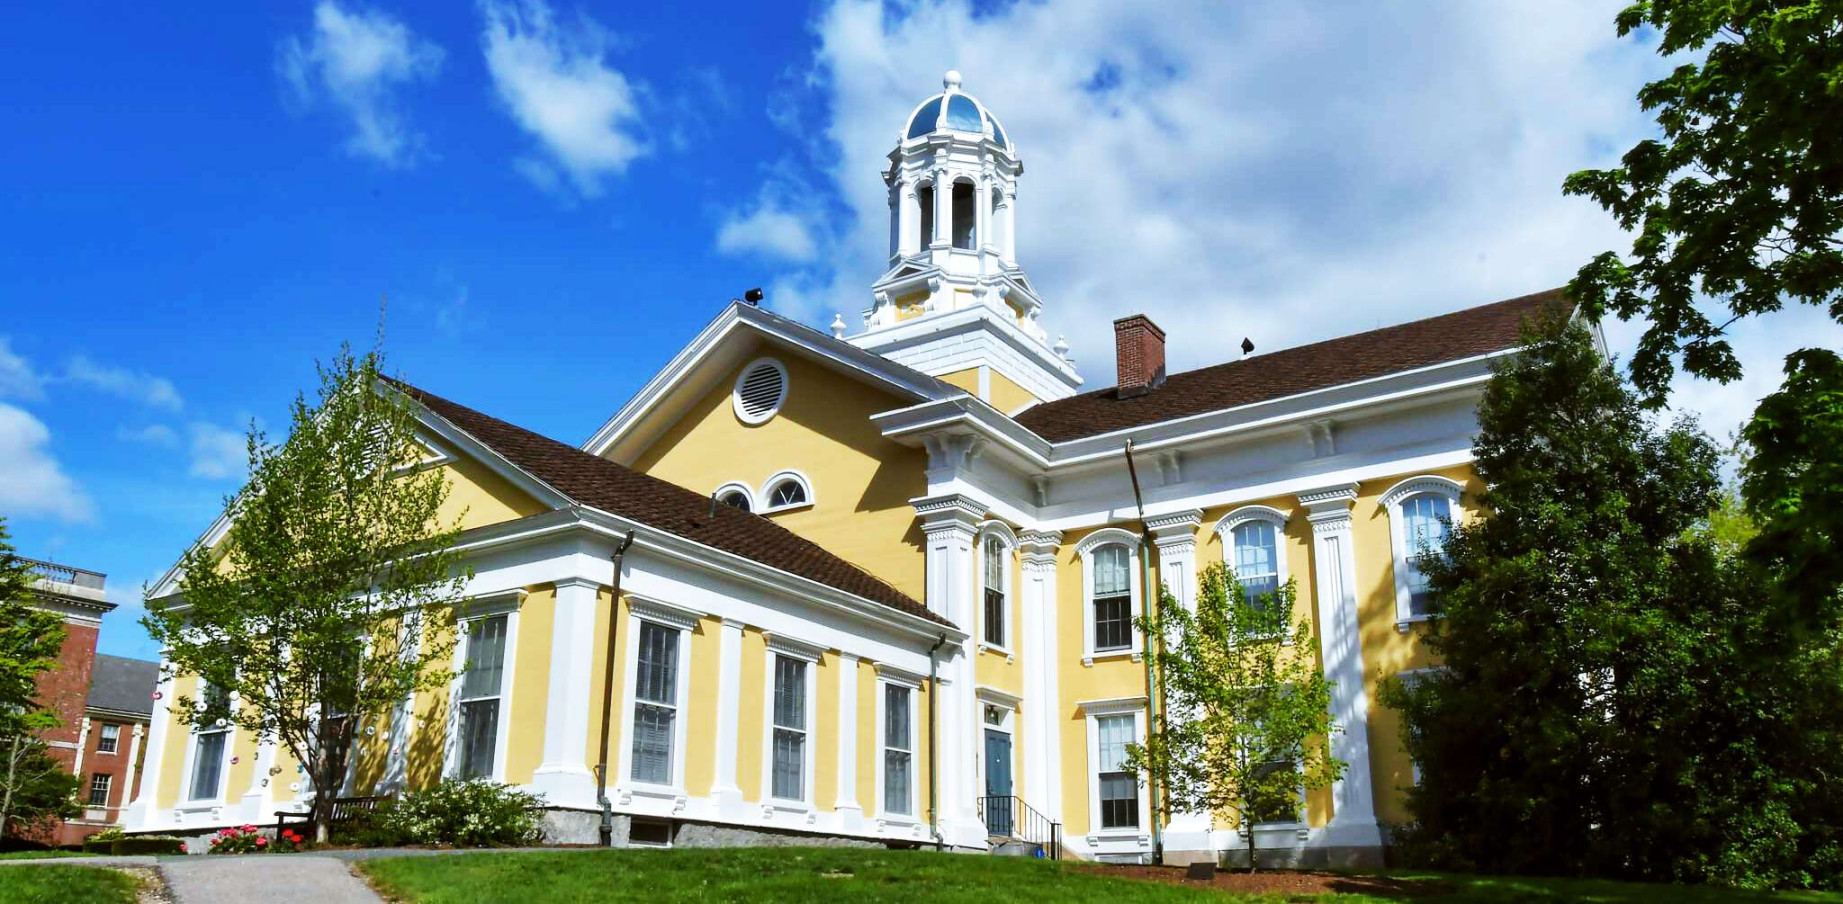 Wheaton College (MA) - Liberal Arts and Sciences College